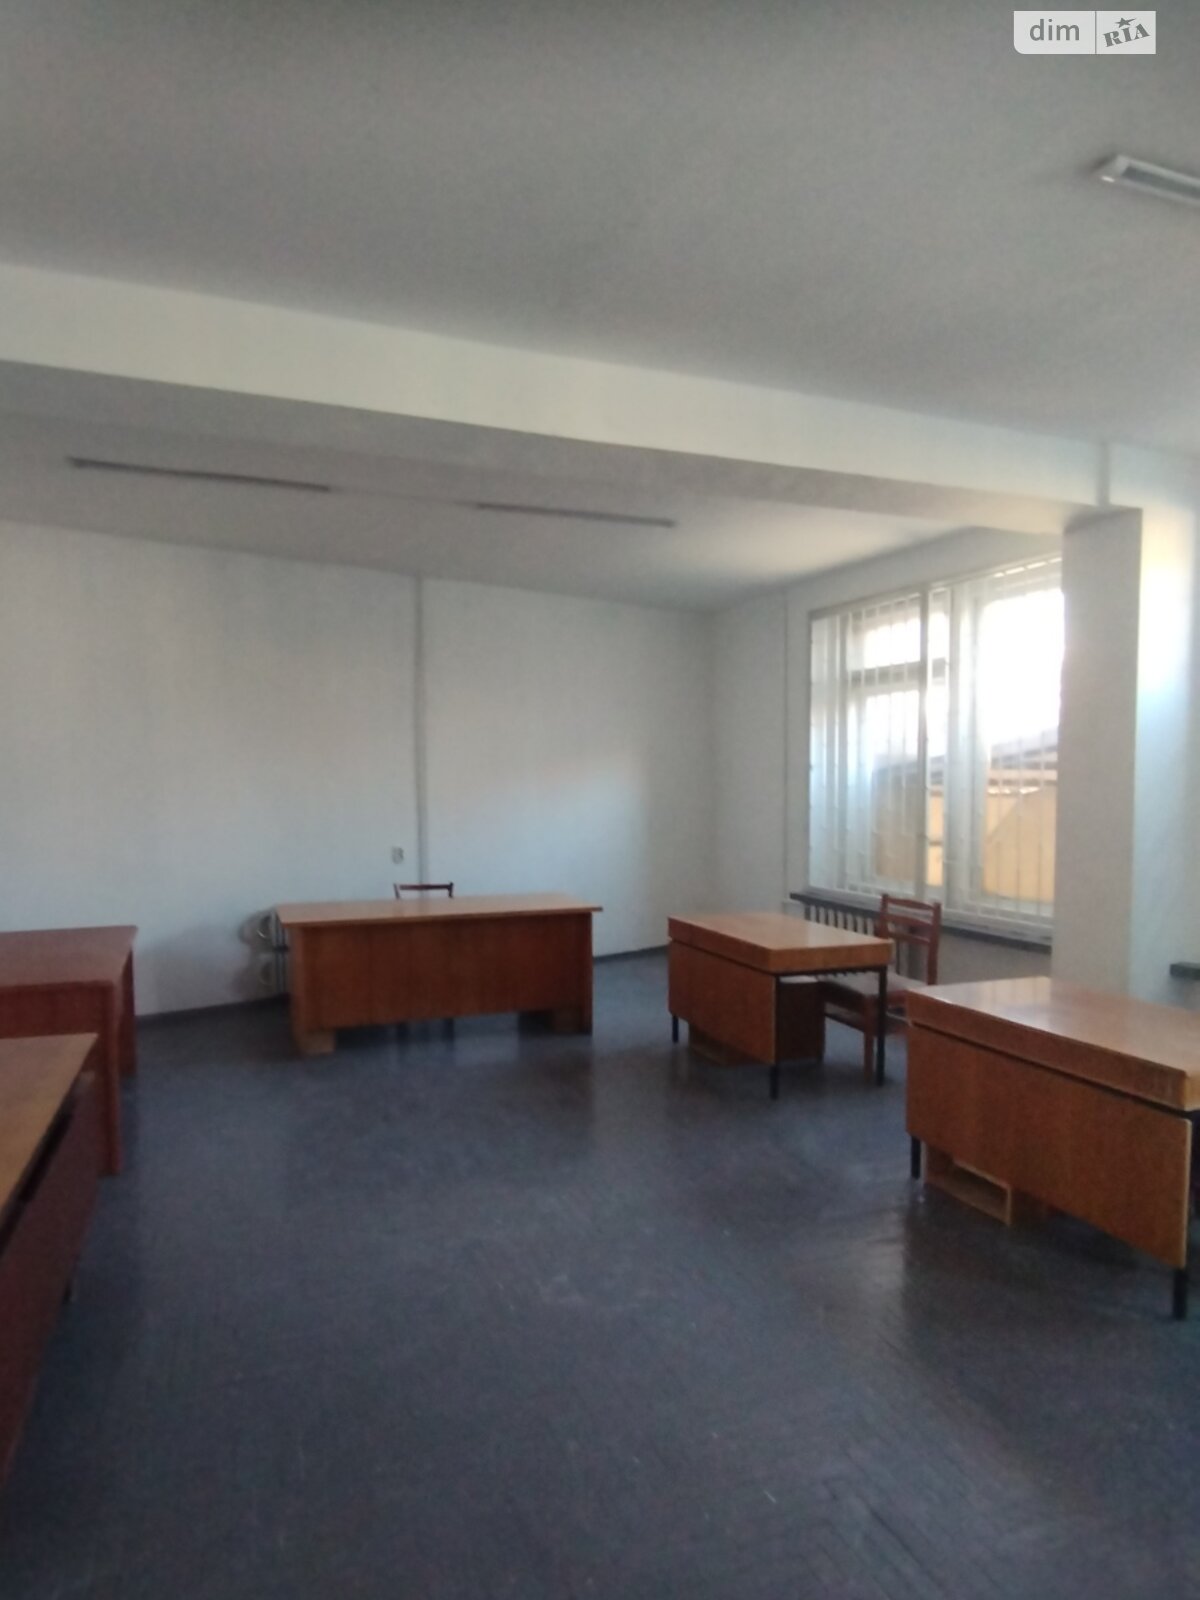 Оренда офісного приміщення в Тернополі, Старий Поділ (Танцорова) вулиця, приміщень - 1, поверх - 4 фото 1